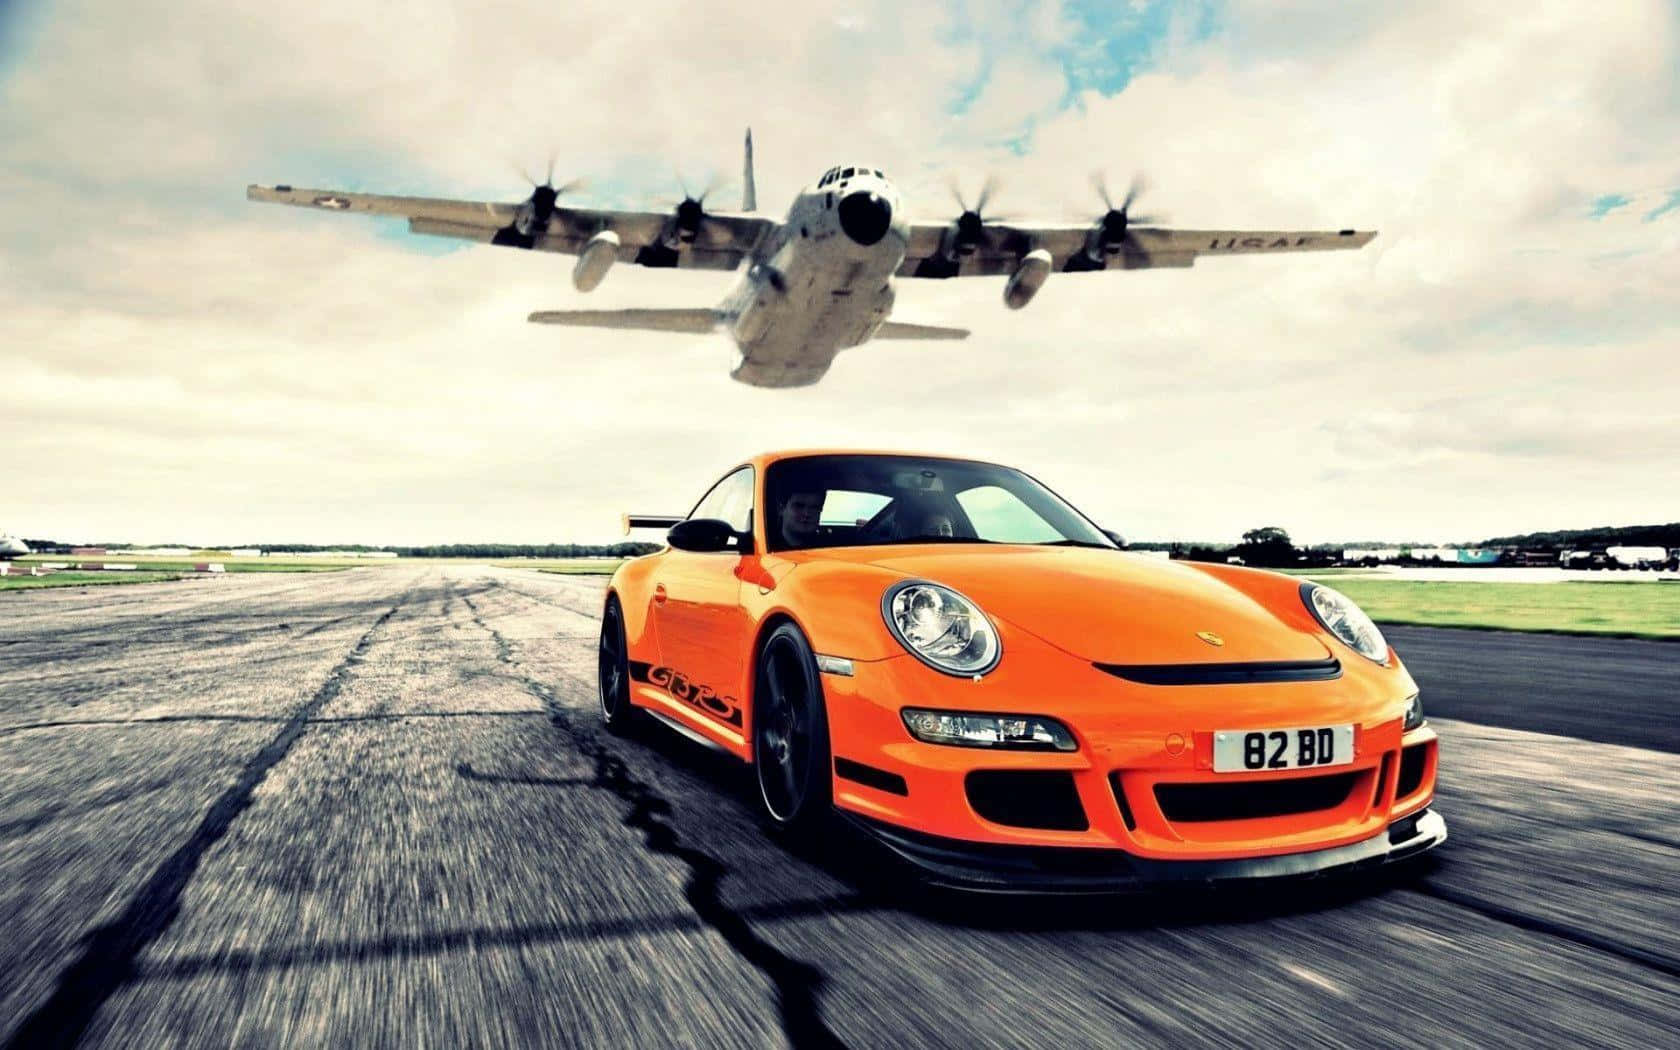 Jag Rekommenderar Att Du Laddar Ner Denna Bild Som Bakgrund, Då Den Visar Upp Den Imponerande Bilen Porsche 911 Gt3 Racer På Ett Fantastiskt Sätt. Wallpaper